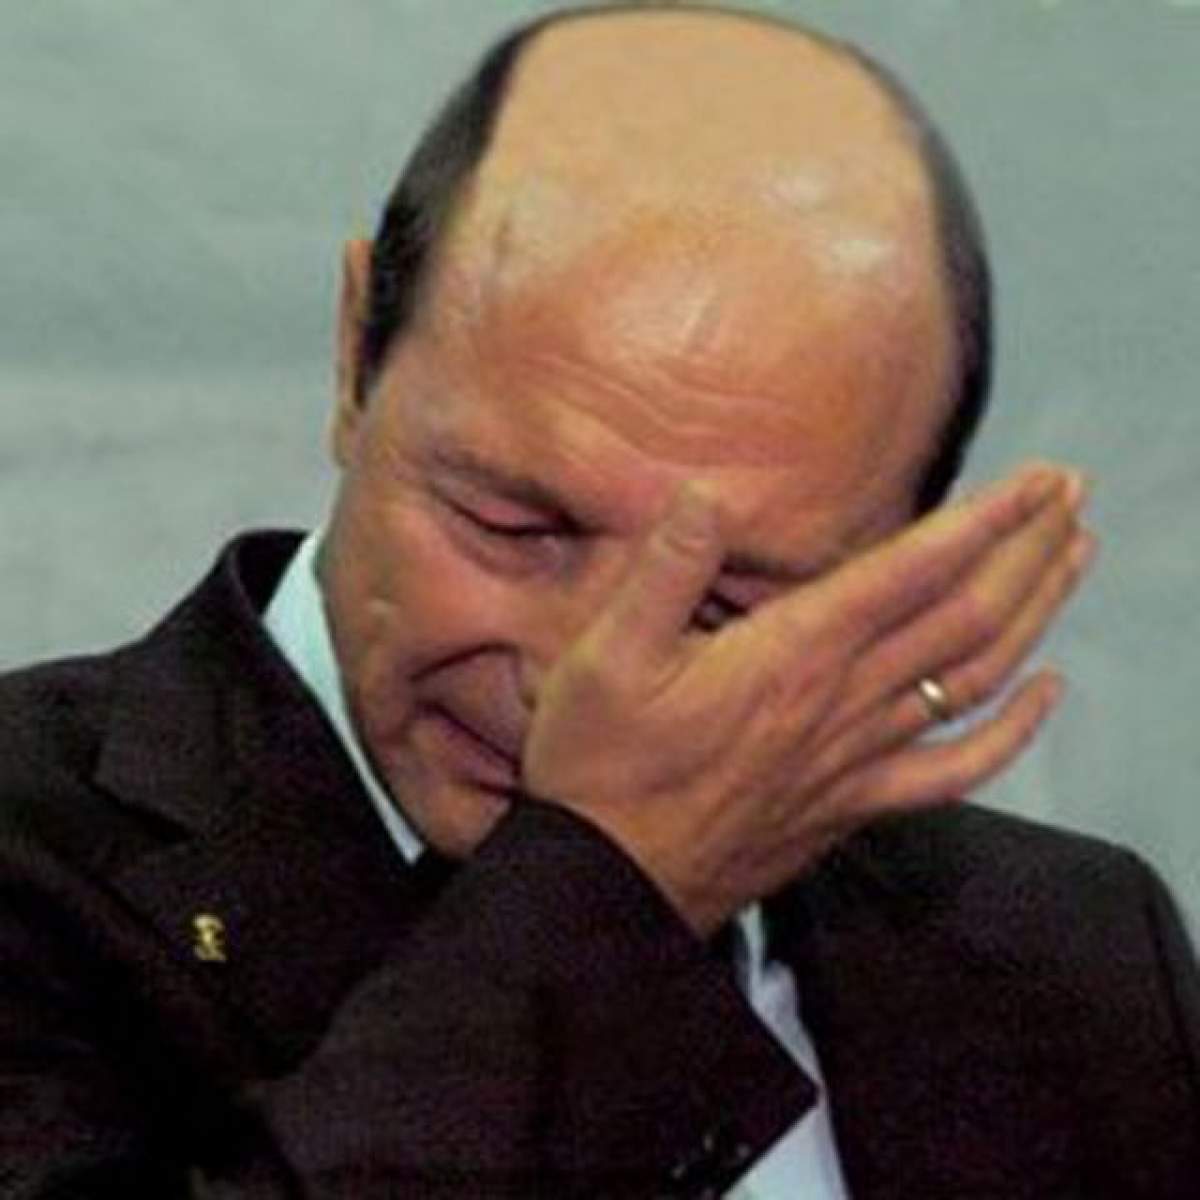 Traian Băsescu, în lacrimi: "Între reflexul firesc de a-ţi apăra fratele şi consolidarea justiţiei, aleg ..."